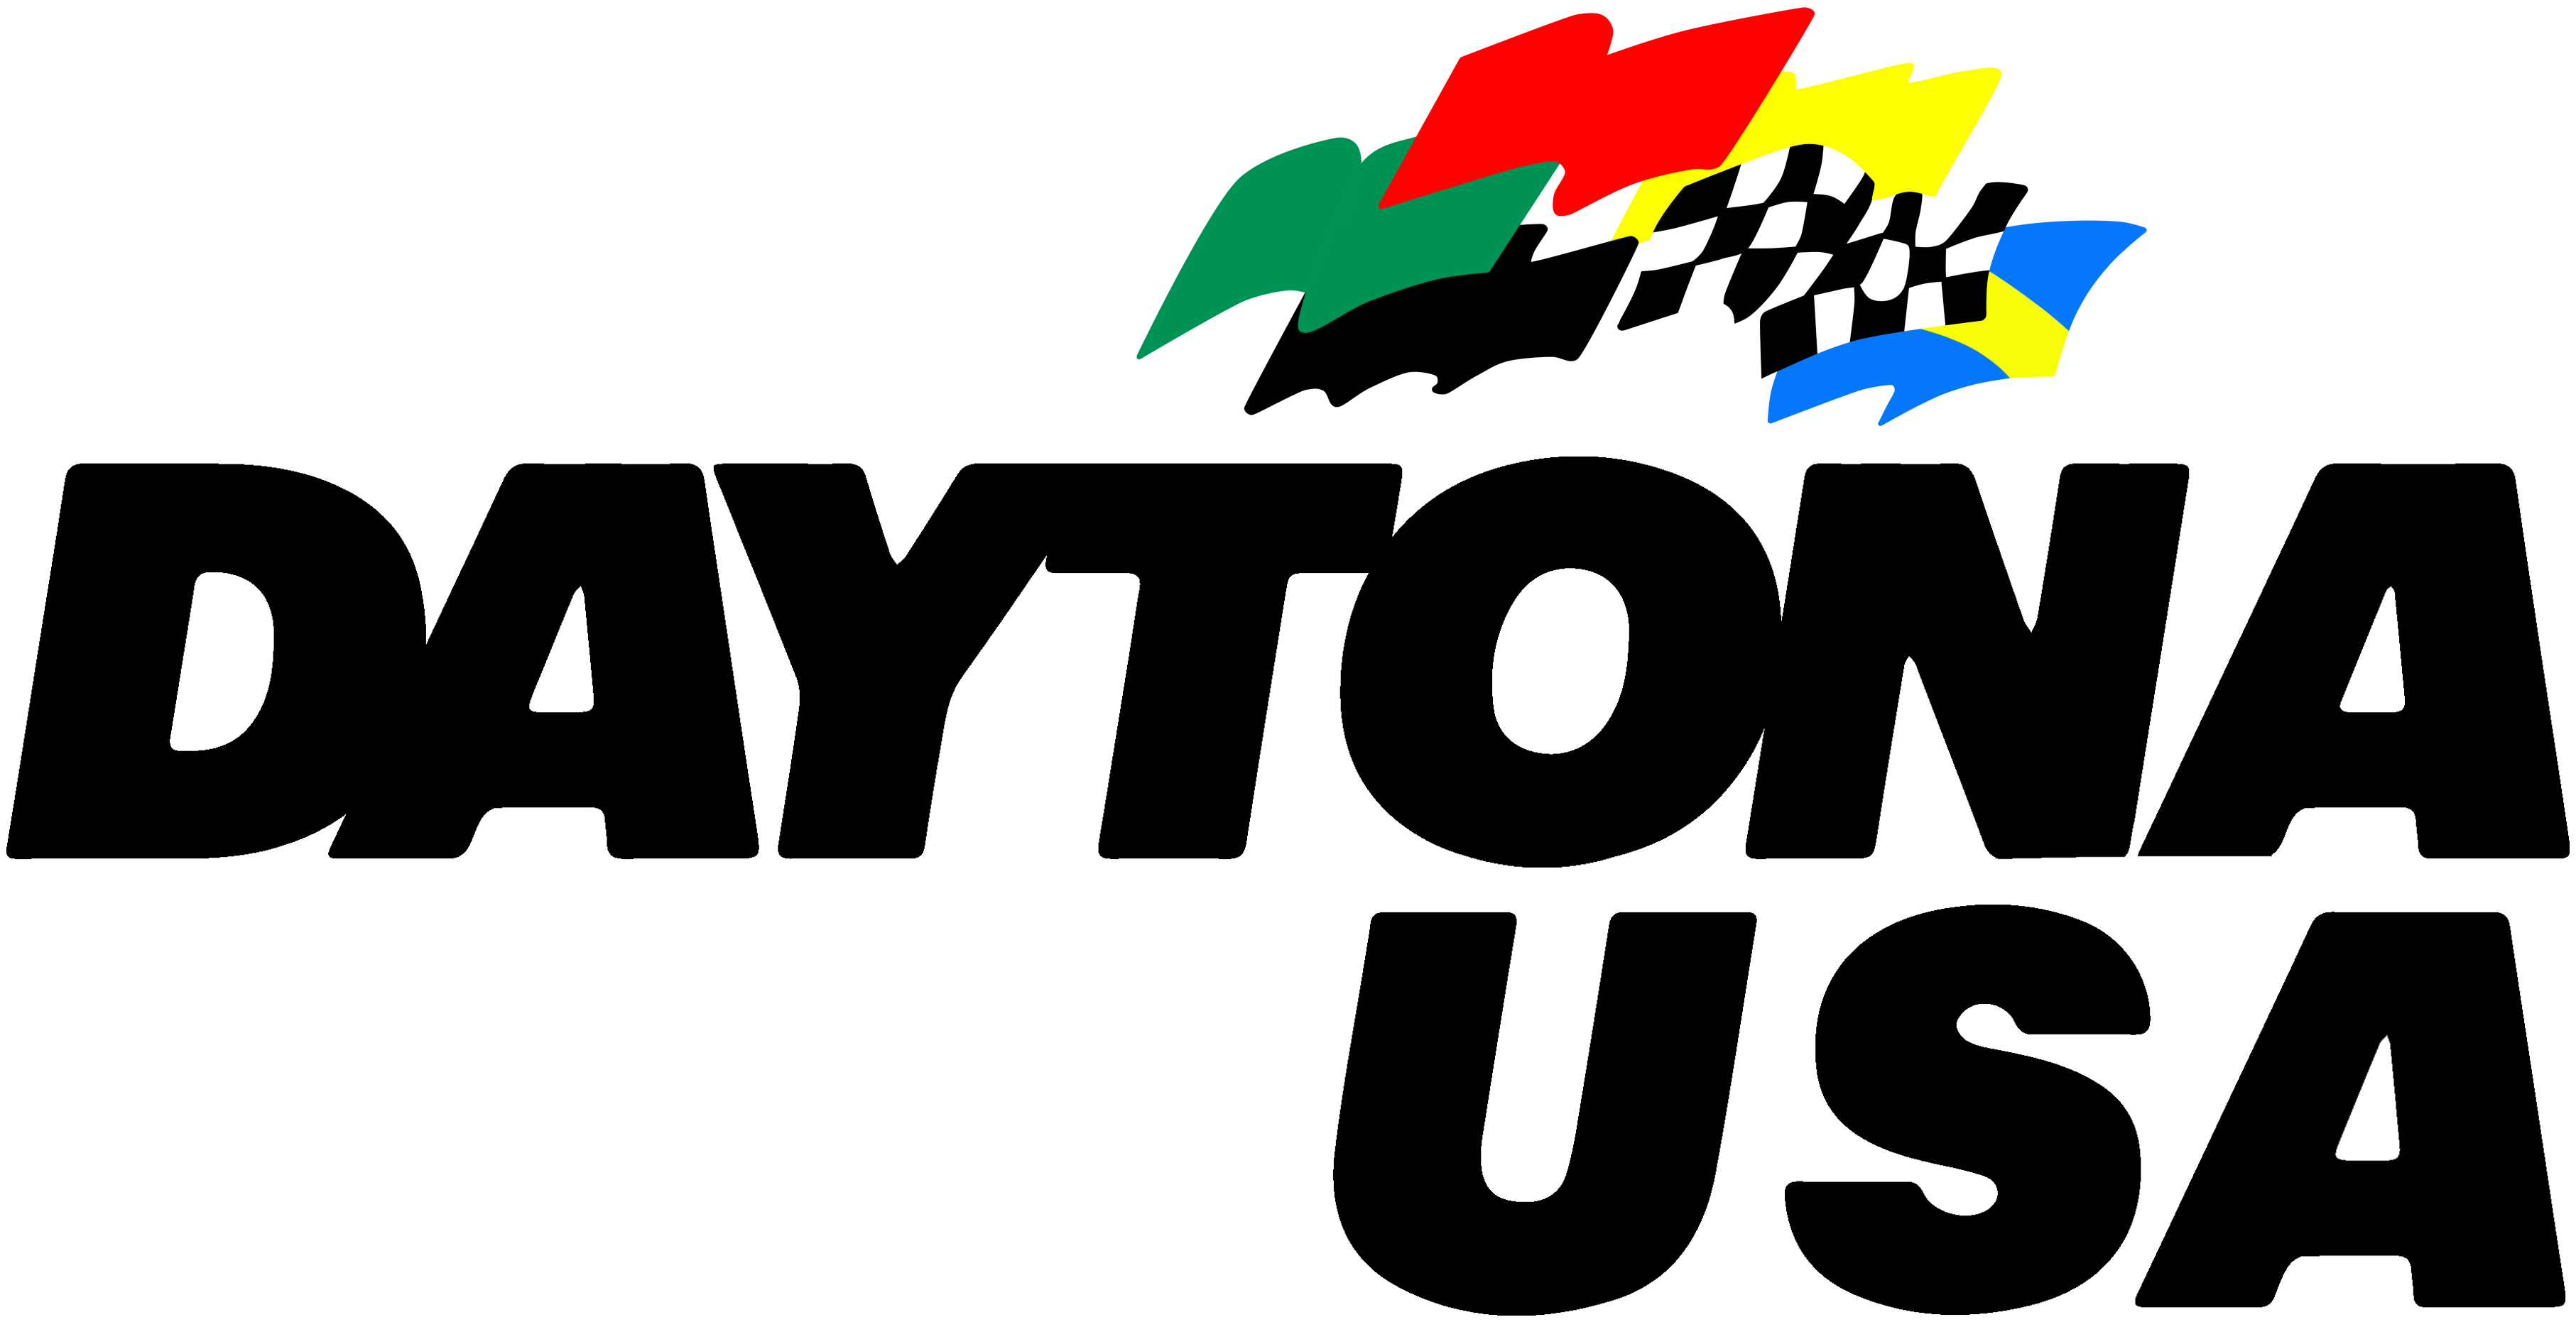 Daytona USA Details - LaunchBox Games Database